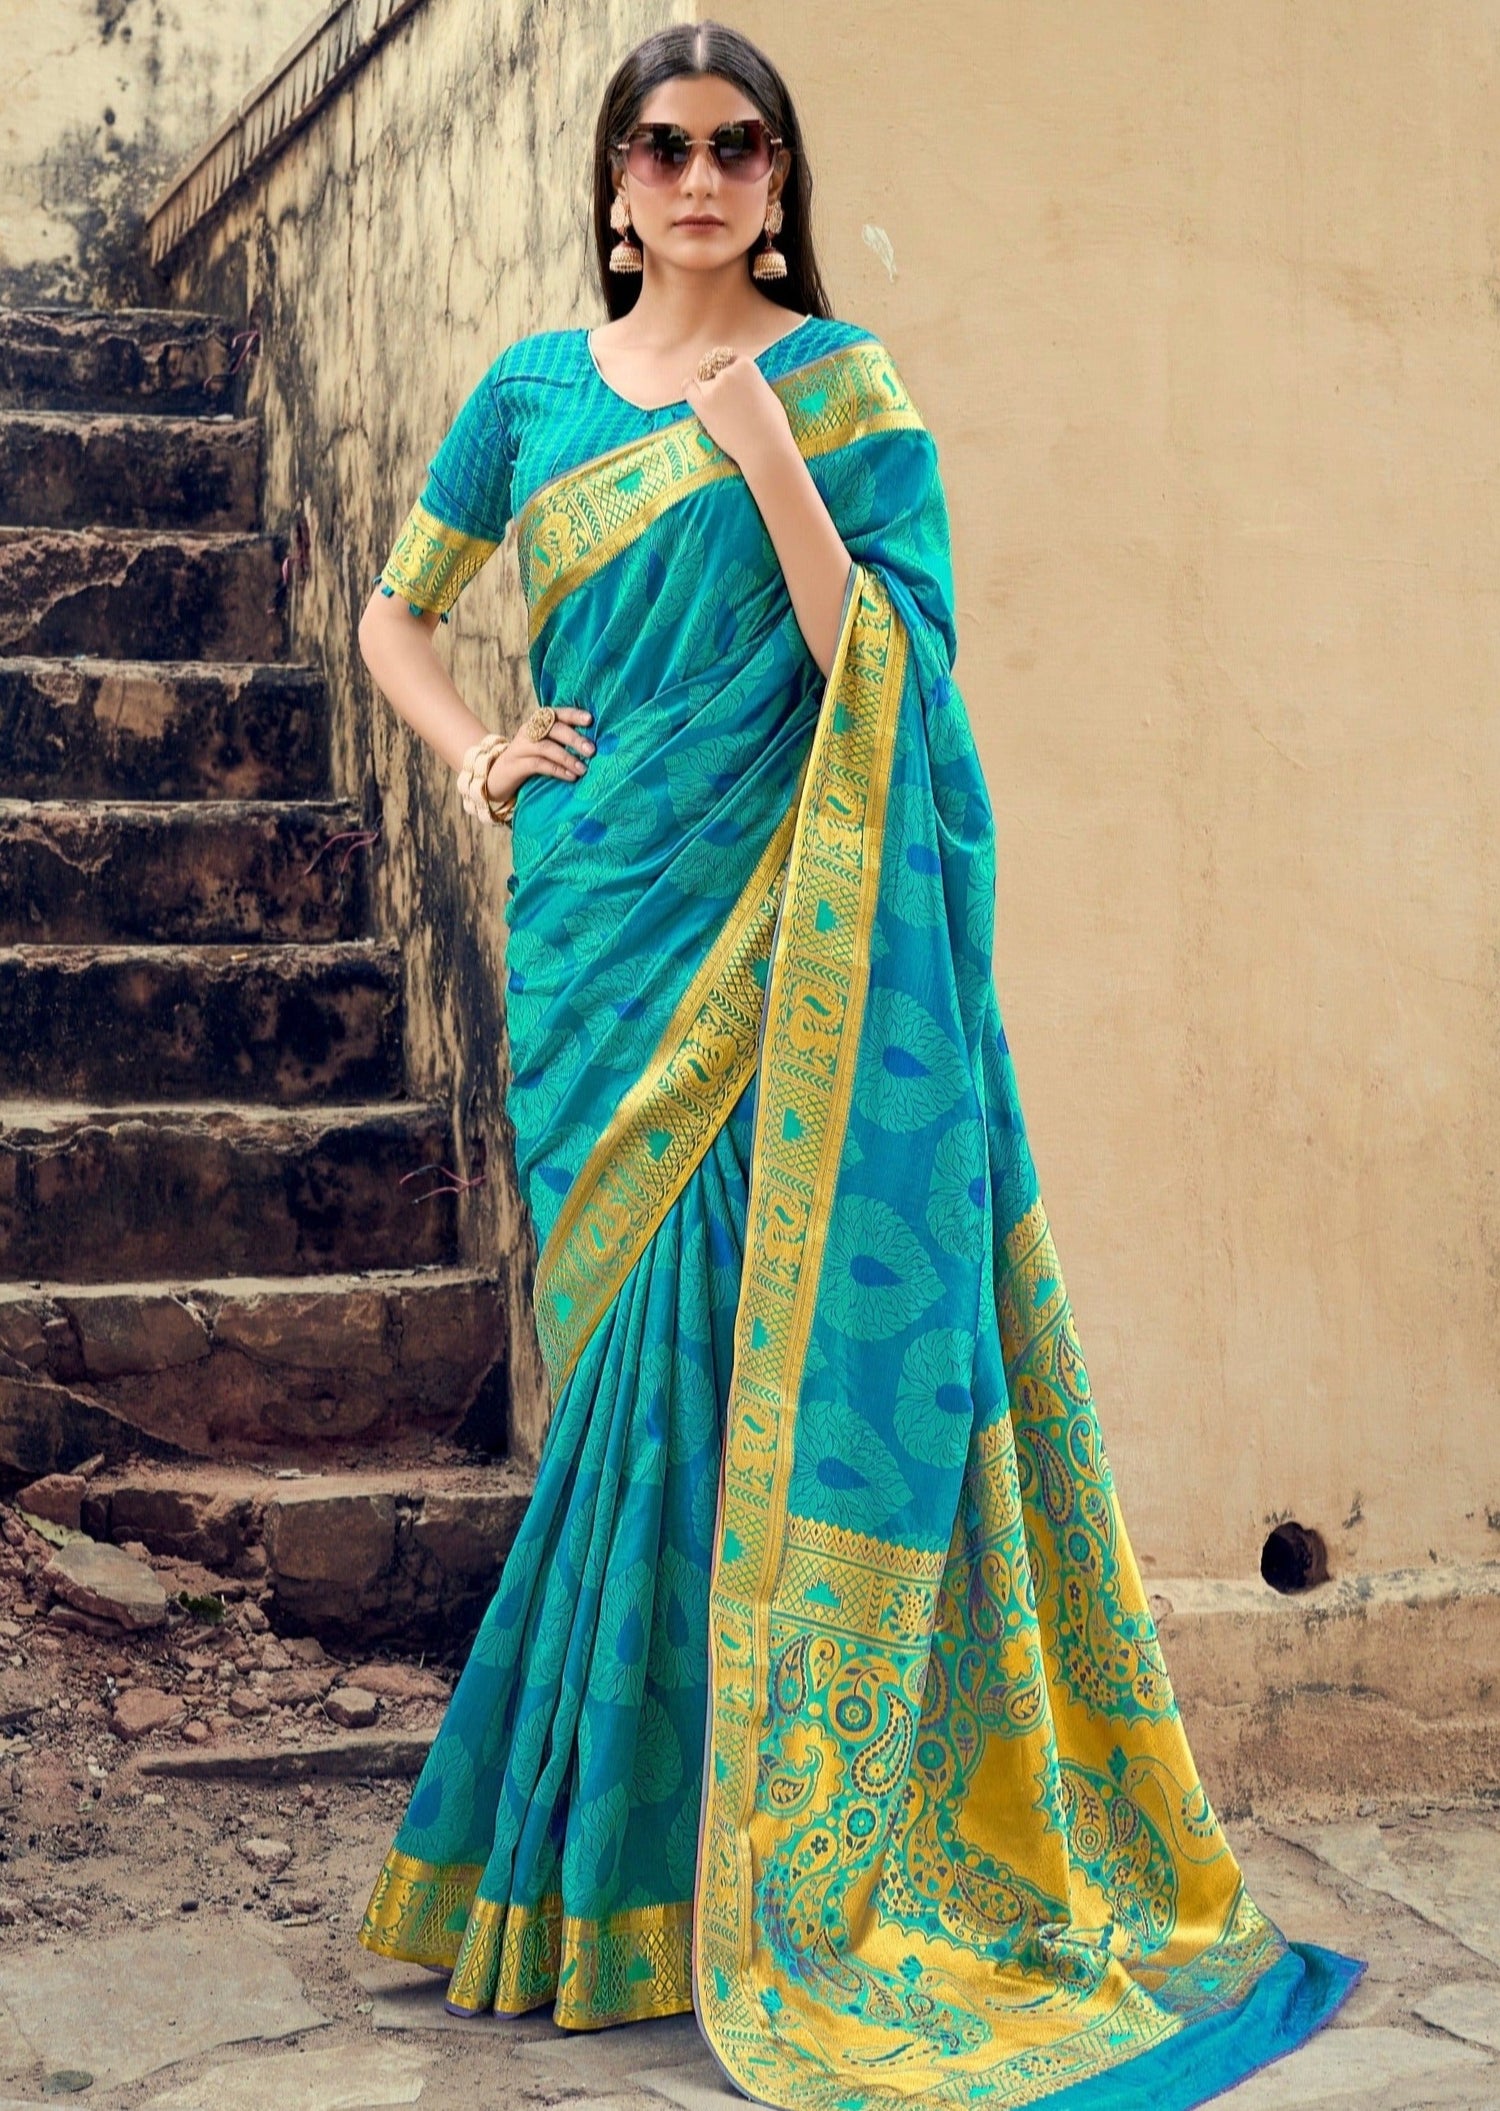 Turquoise blue banarasi silk saree online shopping price india usa uk.